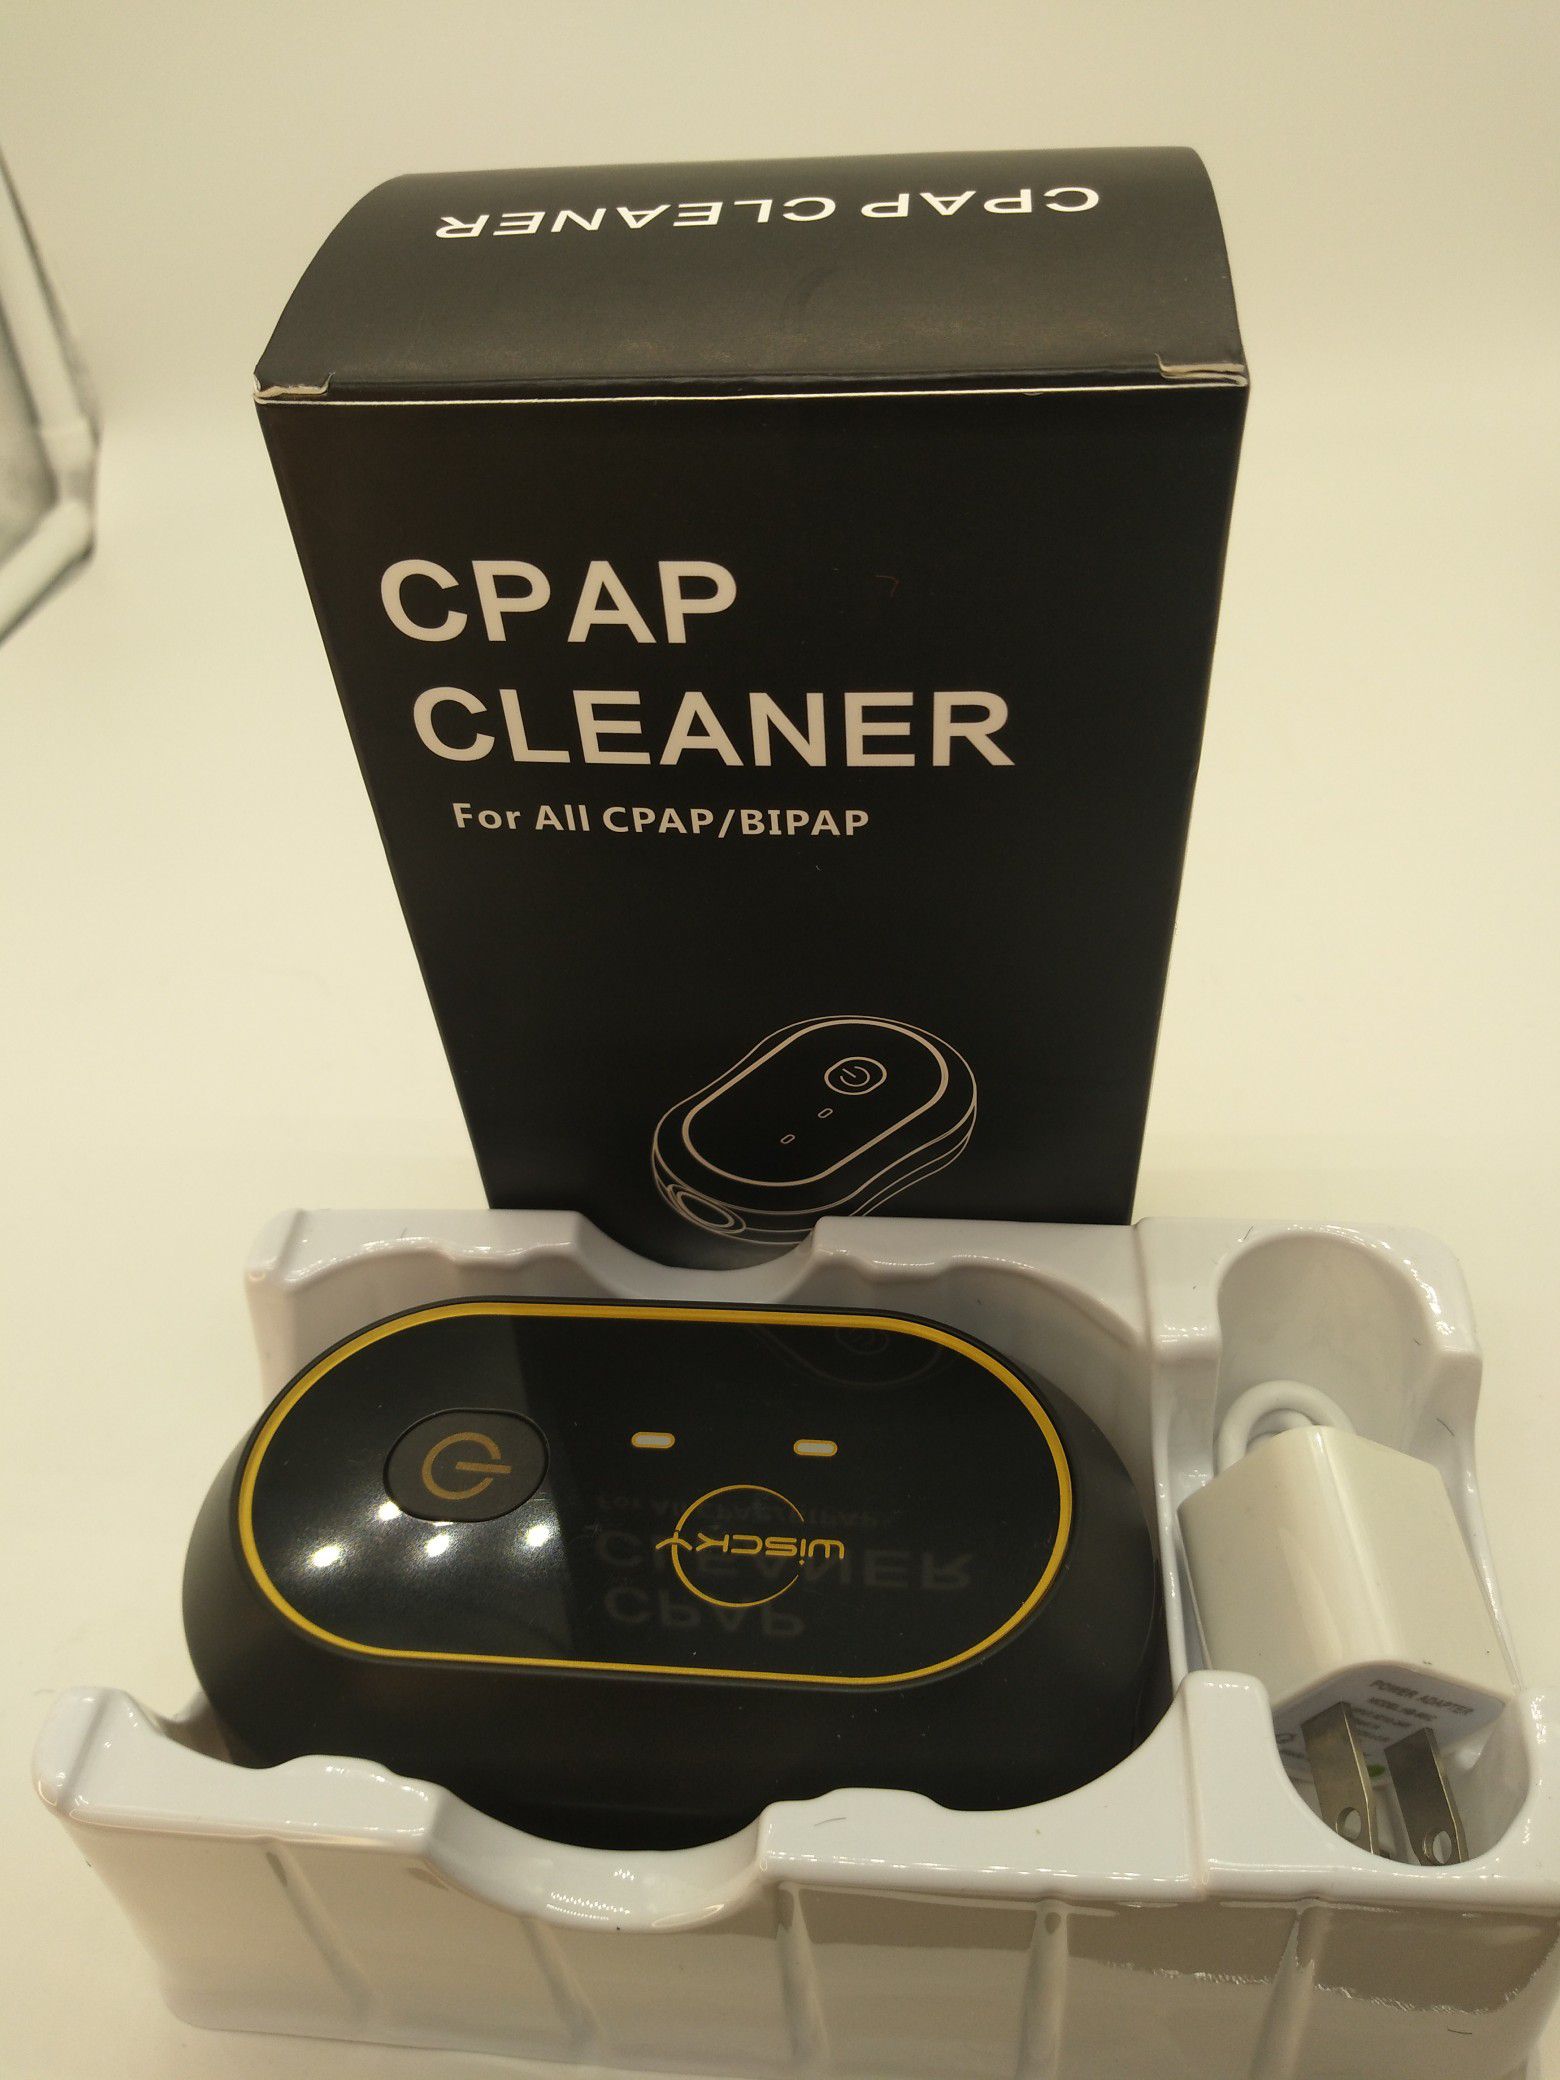 CPAP/Bipap cleaner